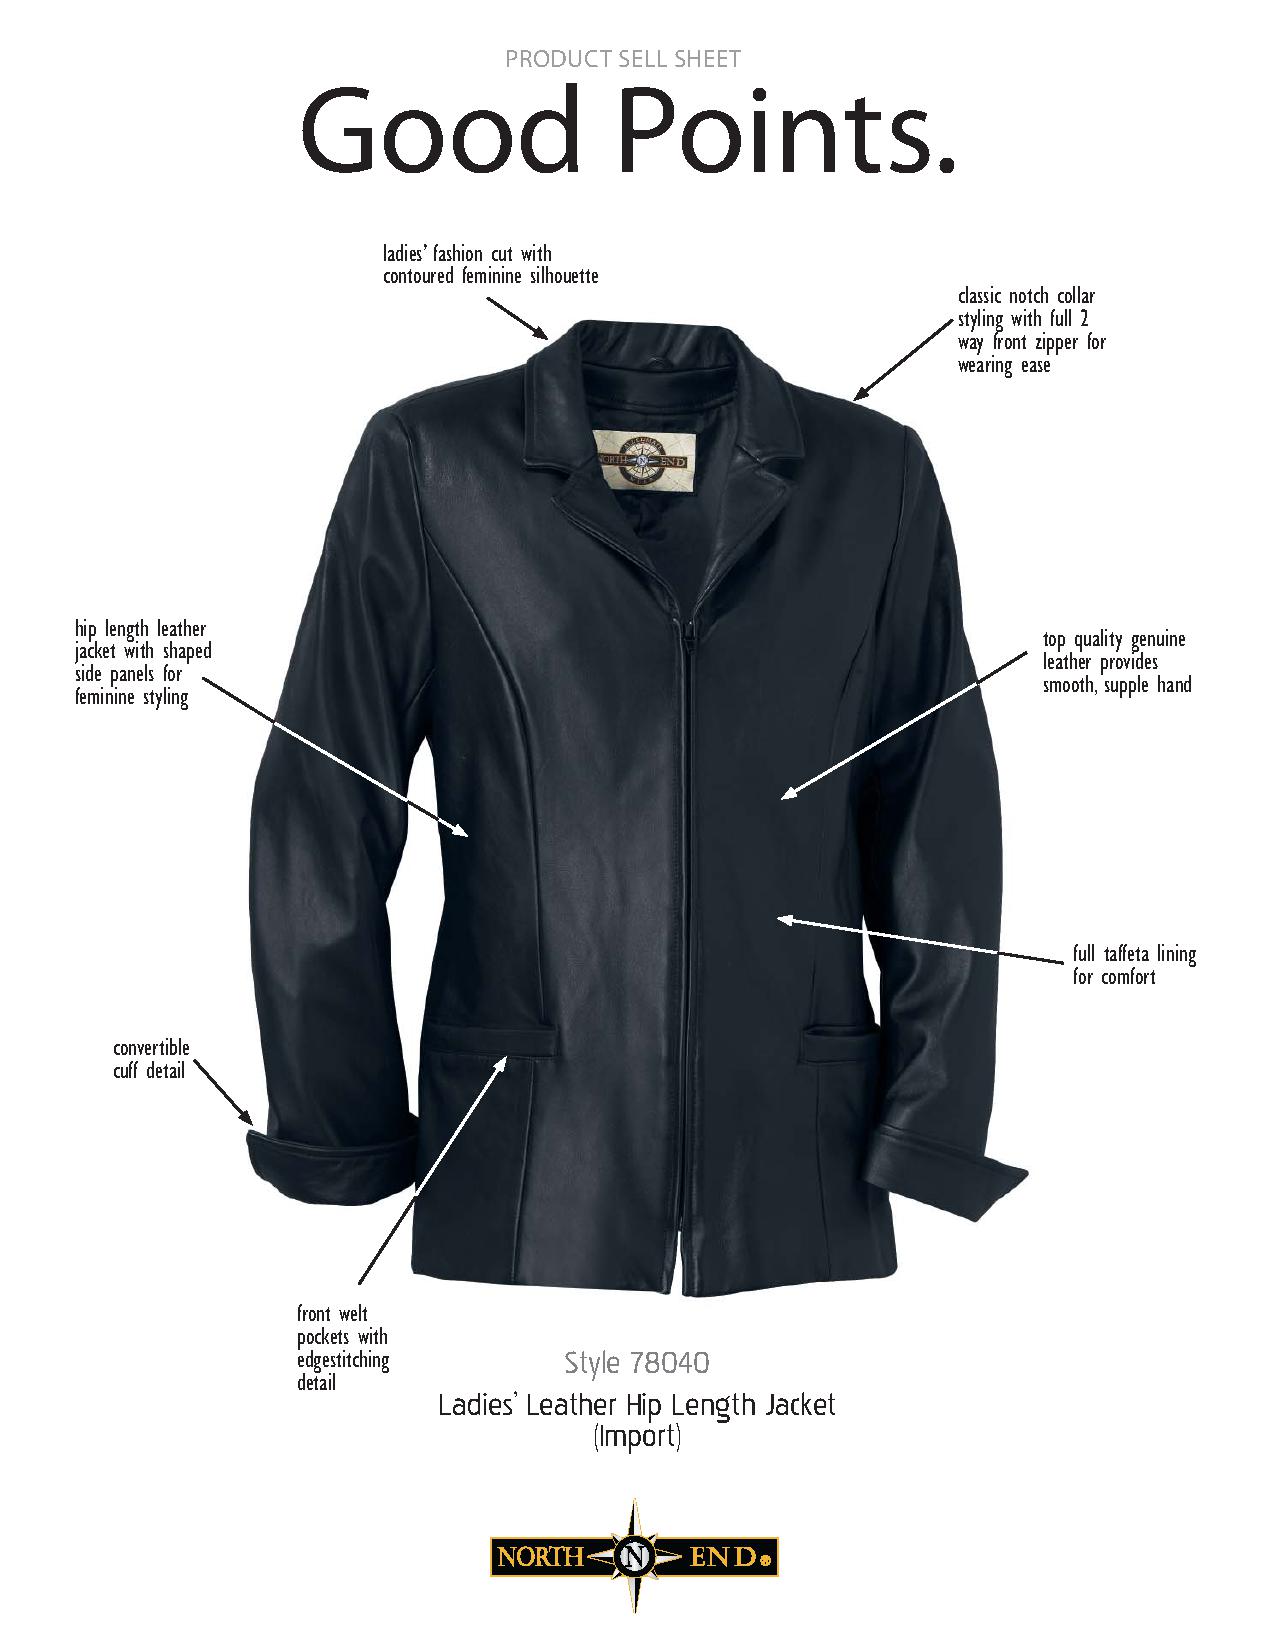 Ash City UTK 1 Warm.Logik 78040 - Ladies' Leather Hip Length Jacket